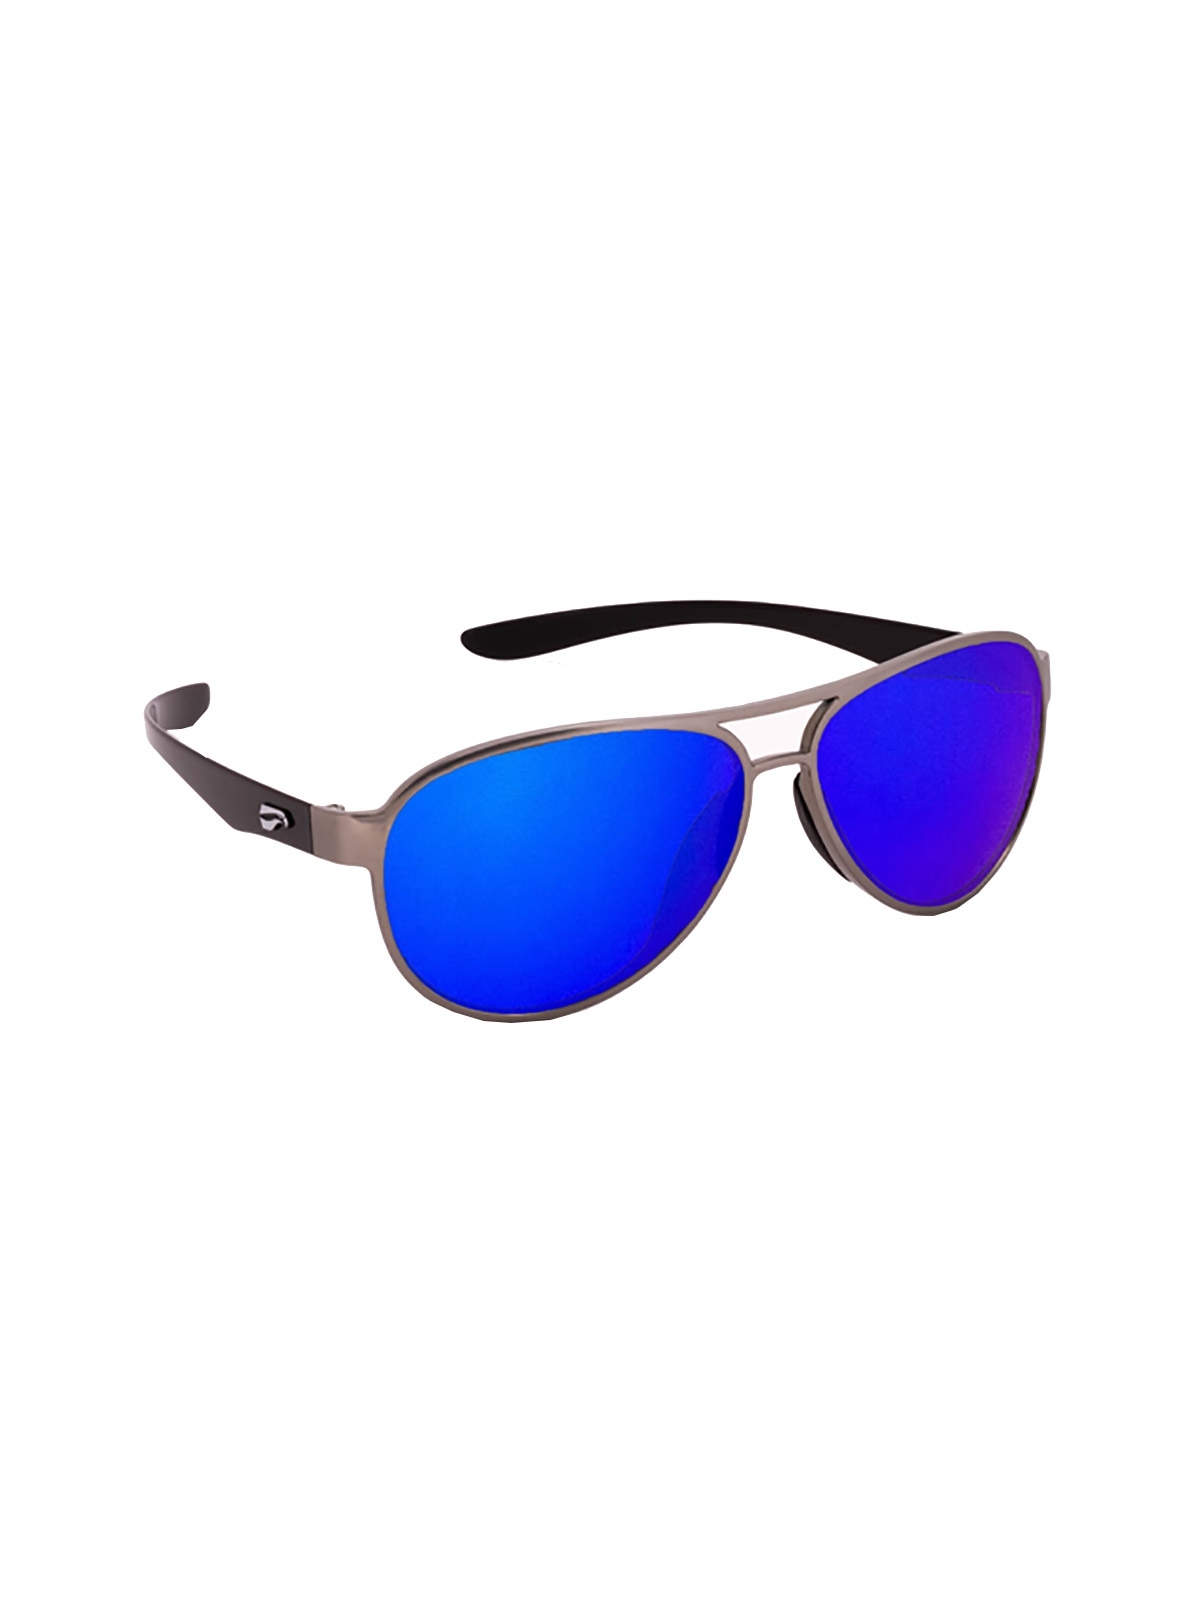 Flying Eyes Sonnenbrille Kestrel Aviator - Rahmen silberfarben mit schwarzen Bügeln, Linsen saphirblau (verspiegelt)